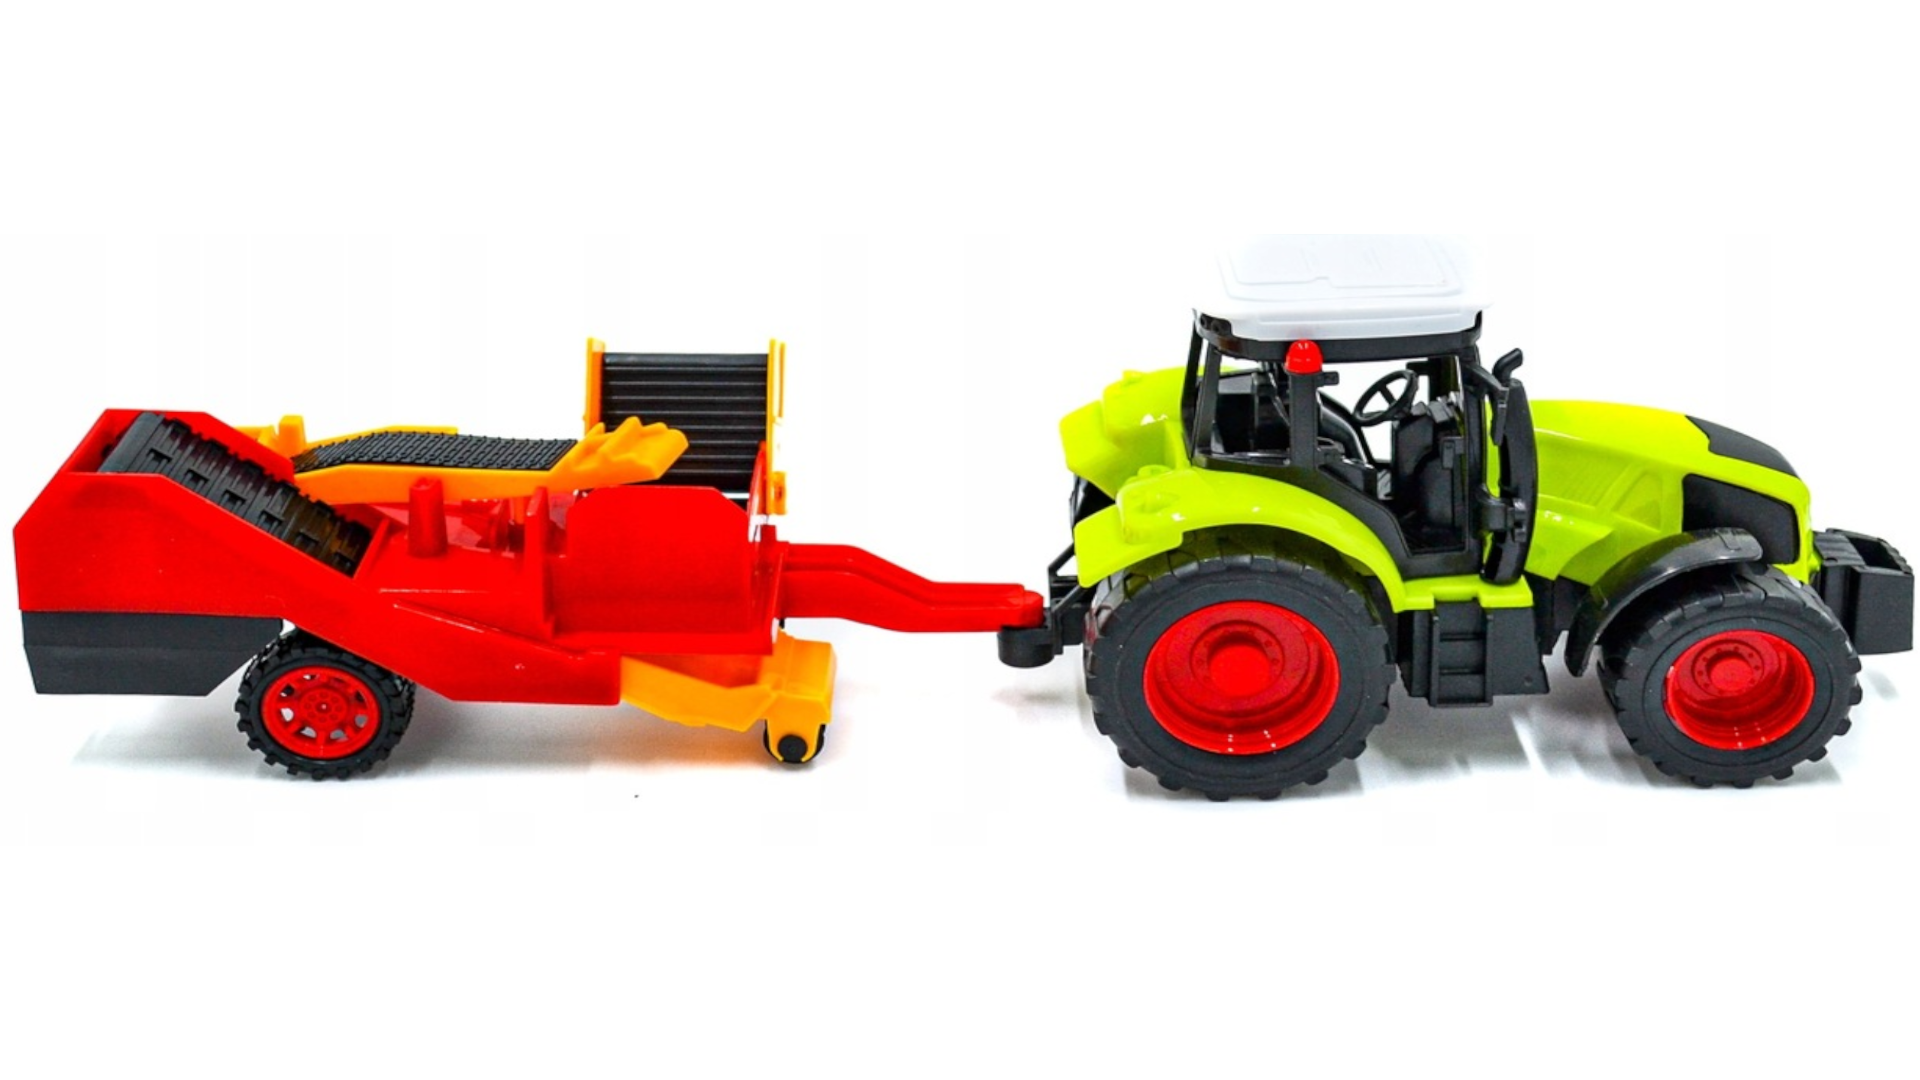 Zestaw Farmerski 3w1 Traktor z Napędem + 3 Maszyny Rolnicze TOMDORIX